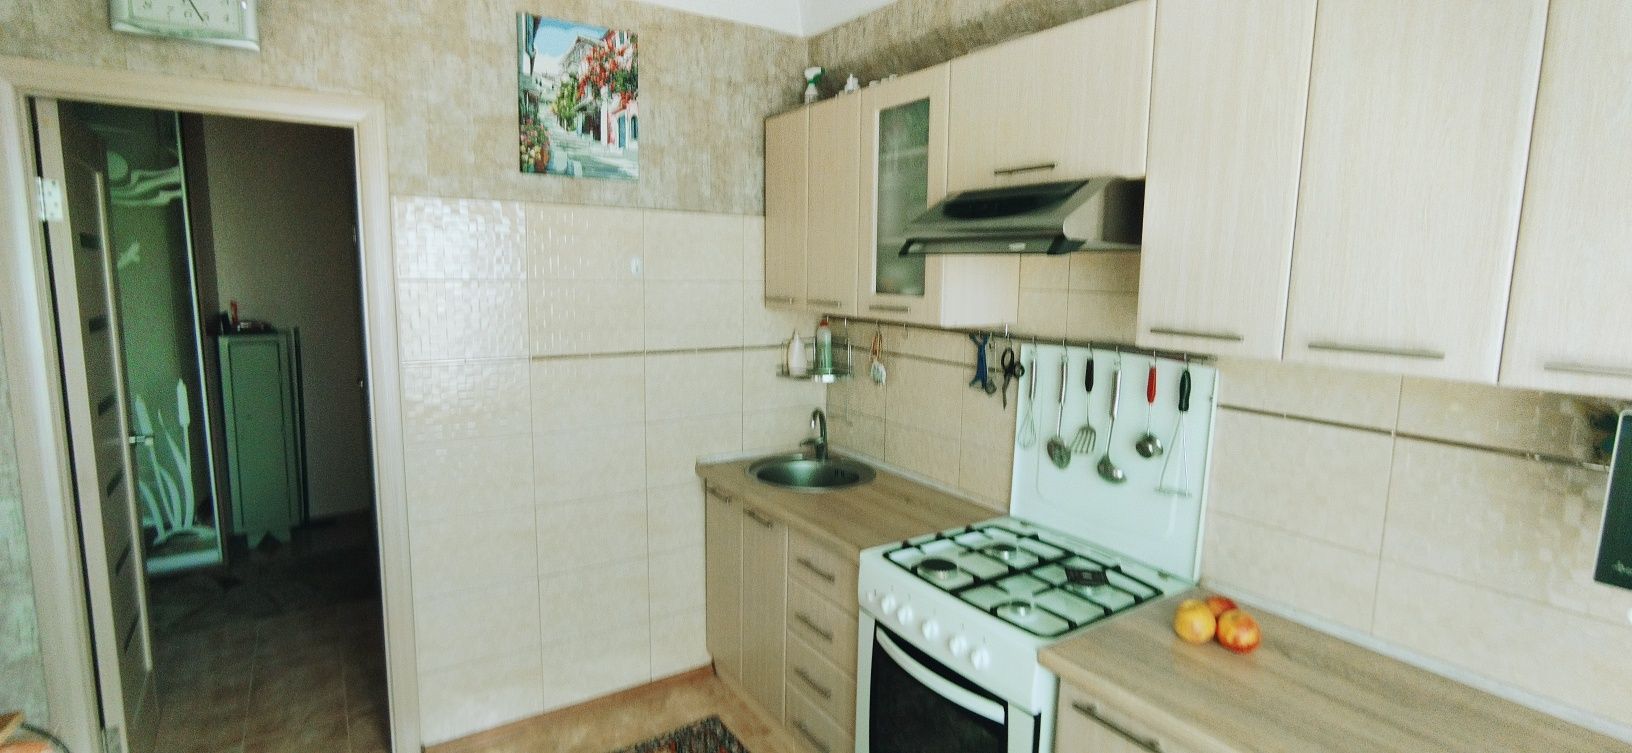 Продам двухкомнатную квартиру на Бородинском районе.